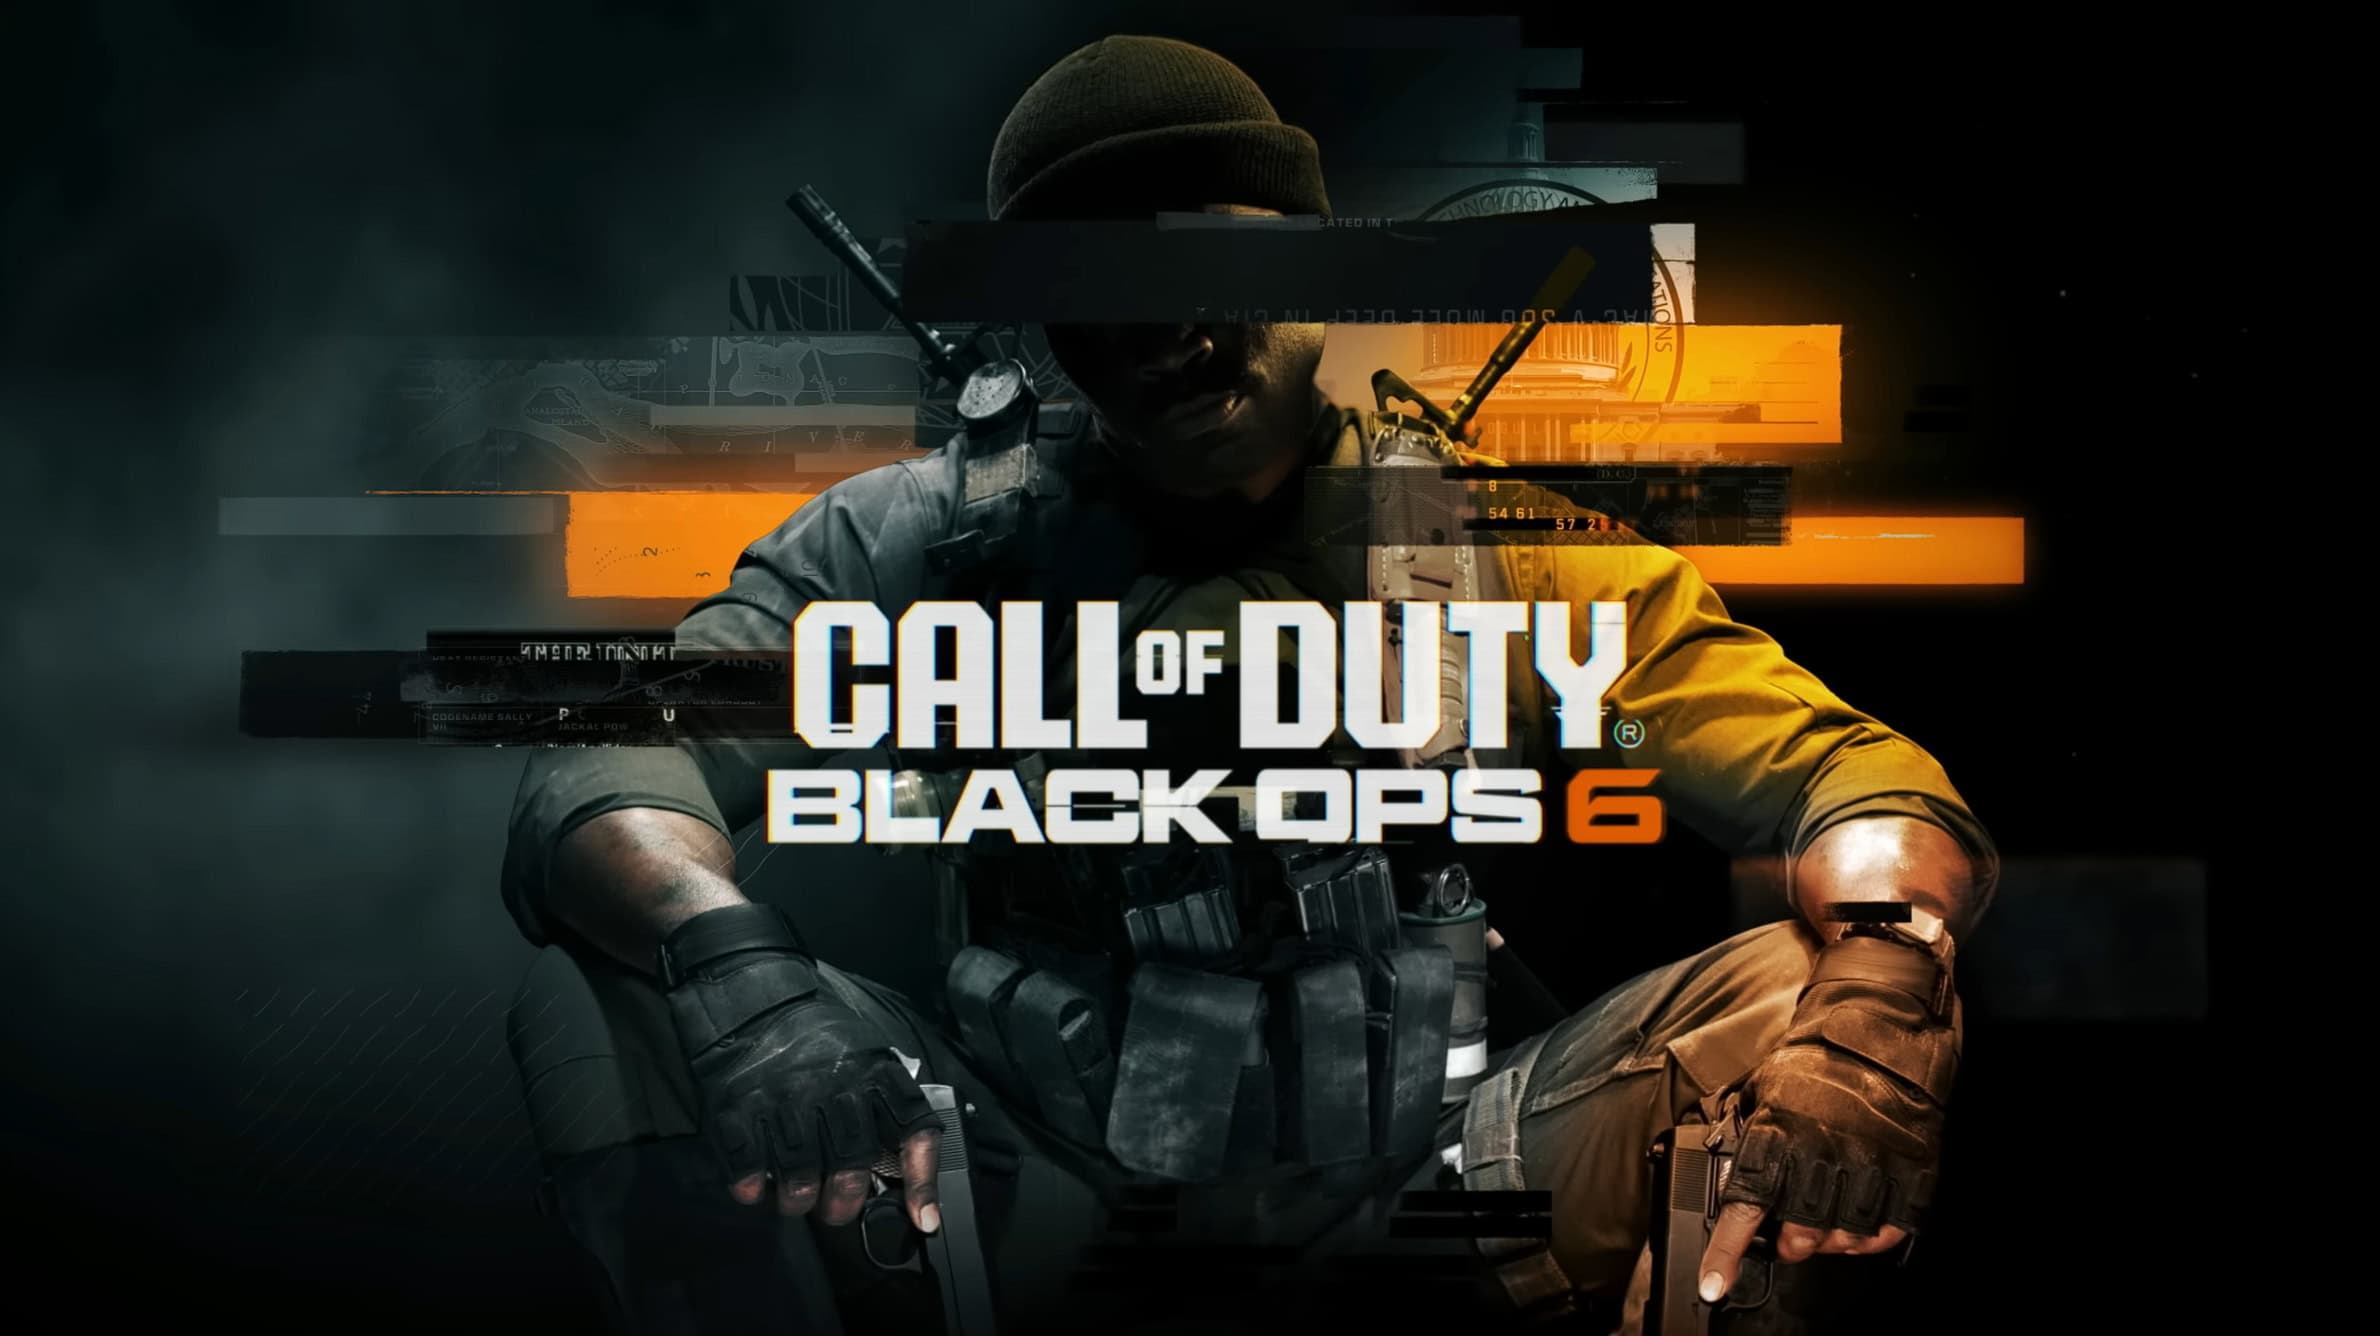 El tráiler de acción en vivo de Black Ops 6 muestra el escenario de la Guerra del Golfo